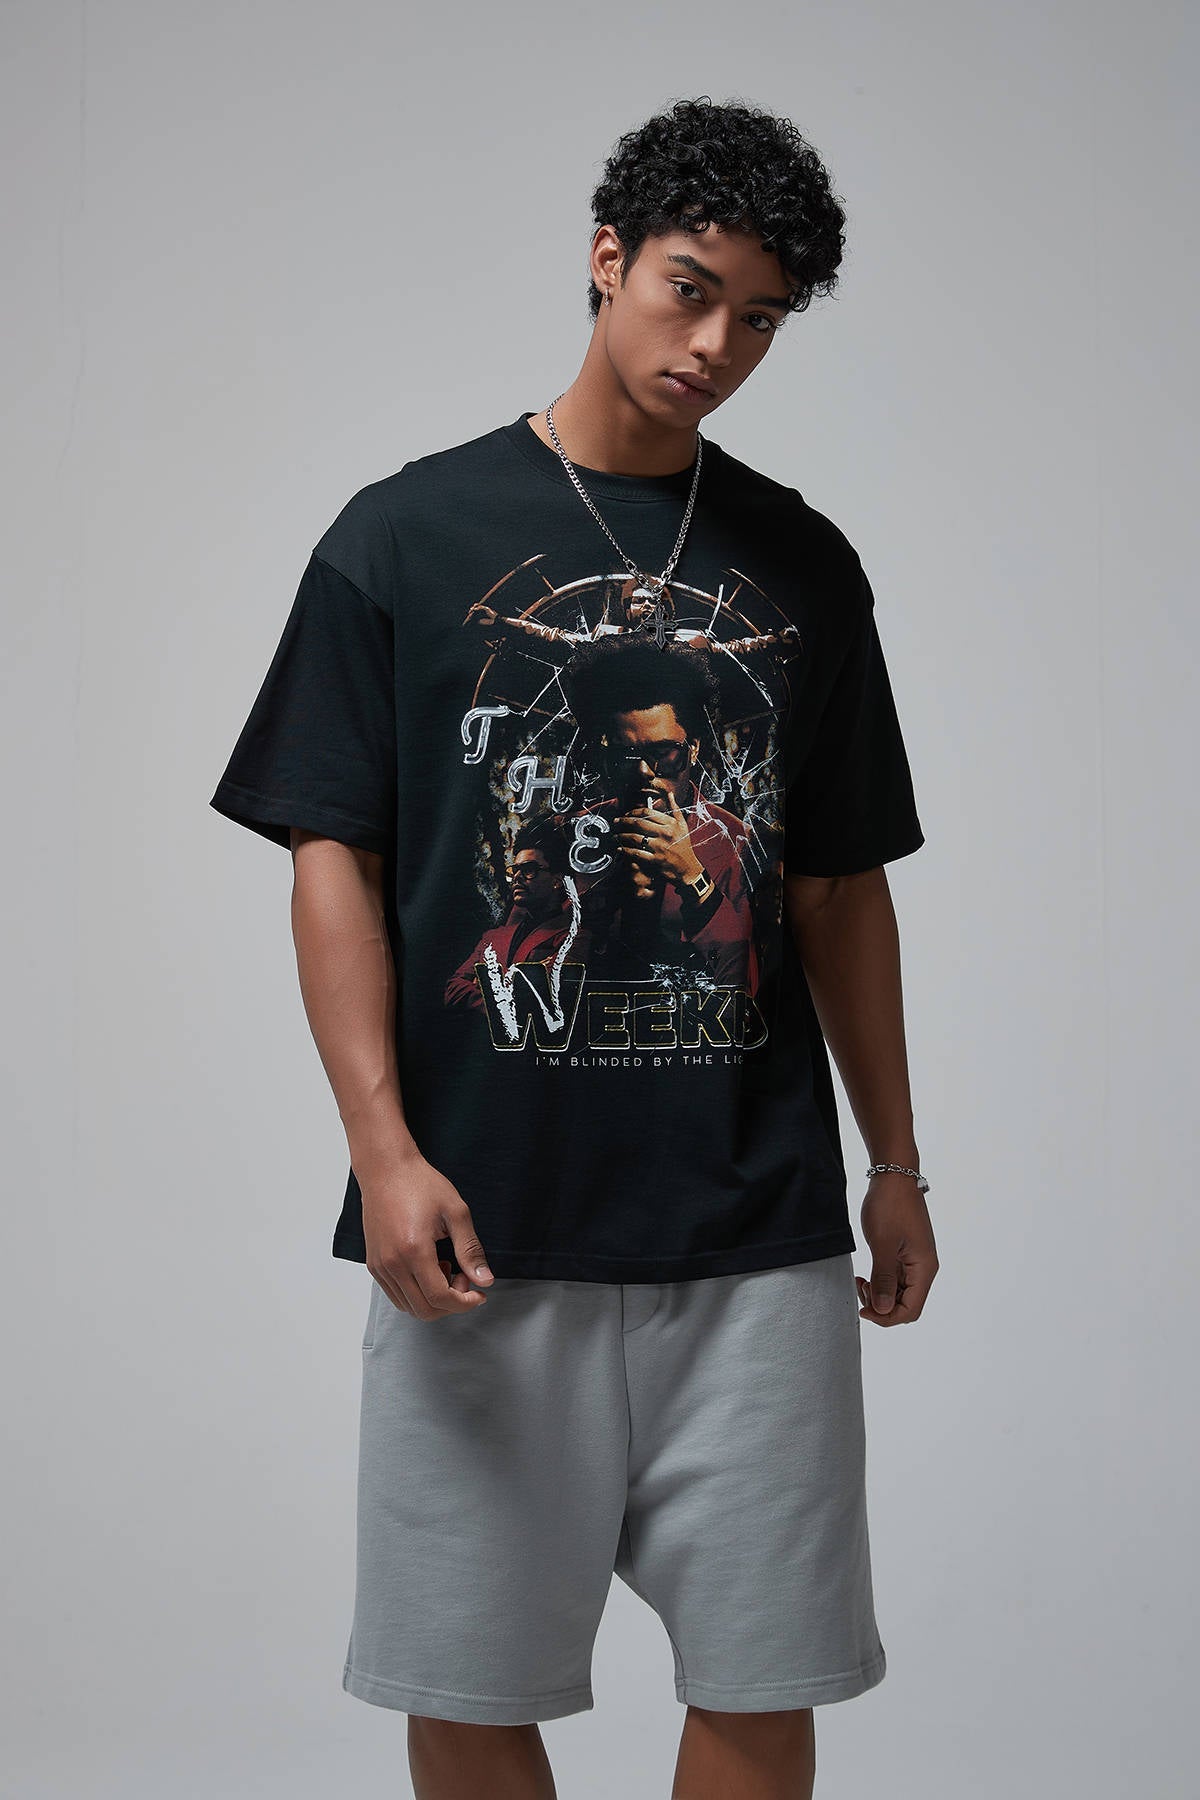 The Weeknd Print Men T-Shirt